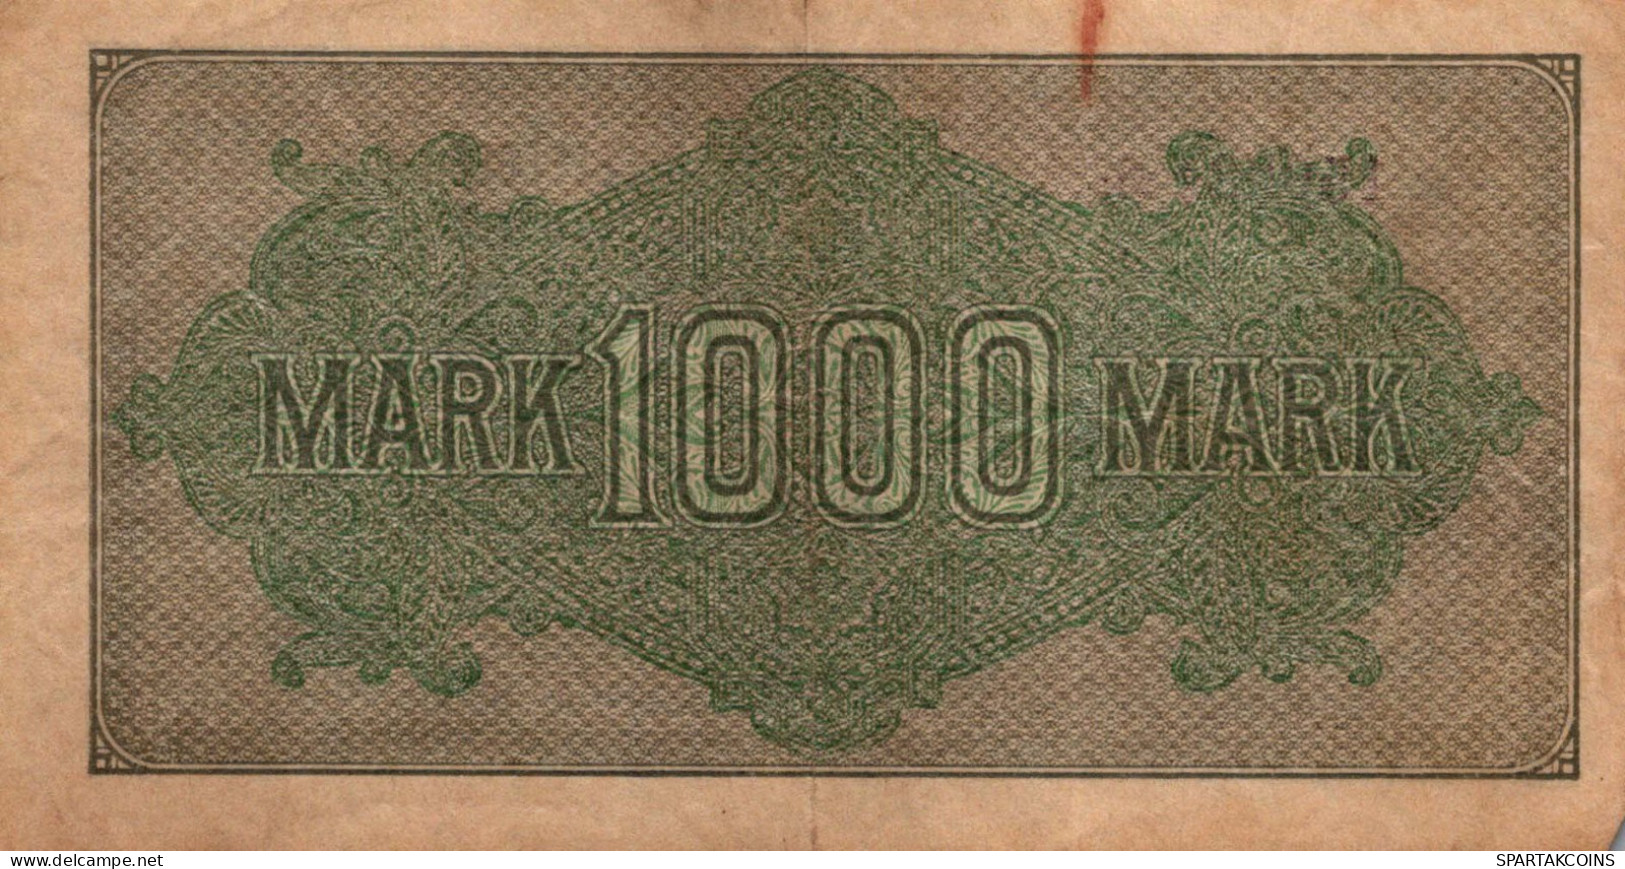 1000 MARK 1922 Stadt BERLIN DEUTSCHLAND Papiergeld Banknote #PL429 - [11] Emisiones Locales